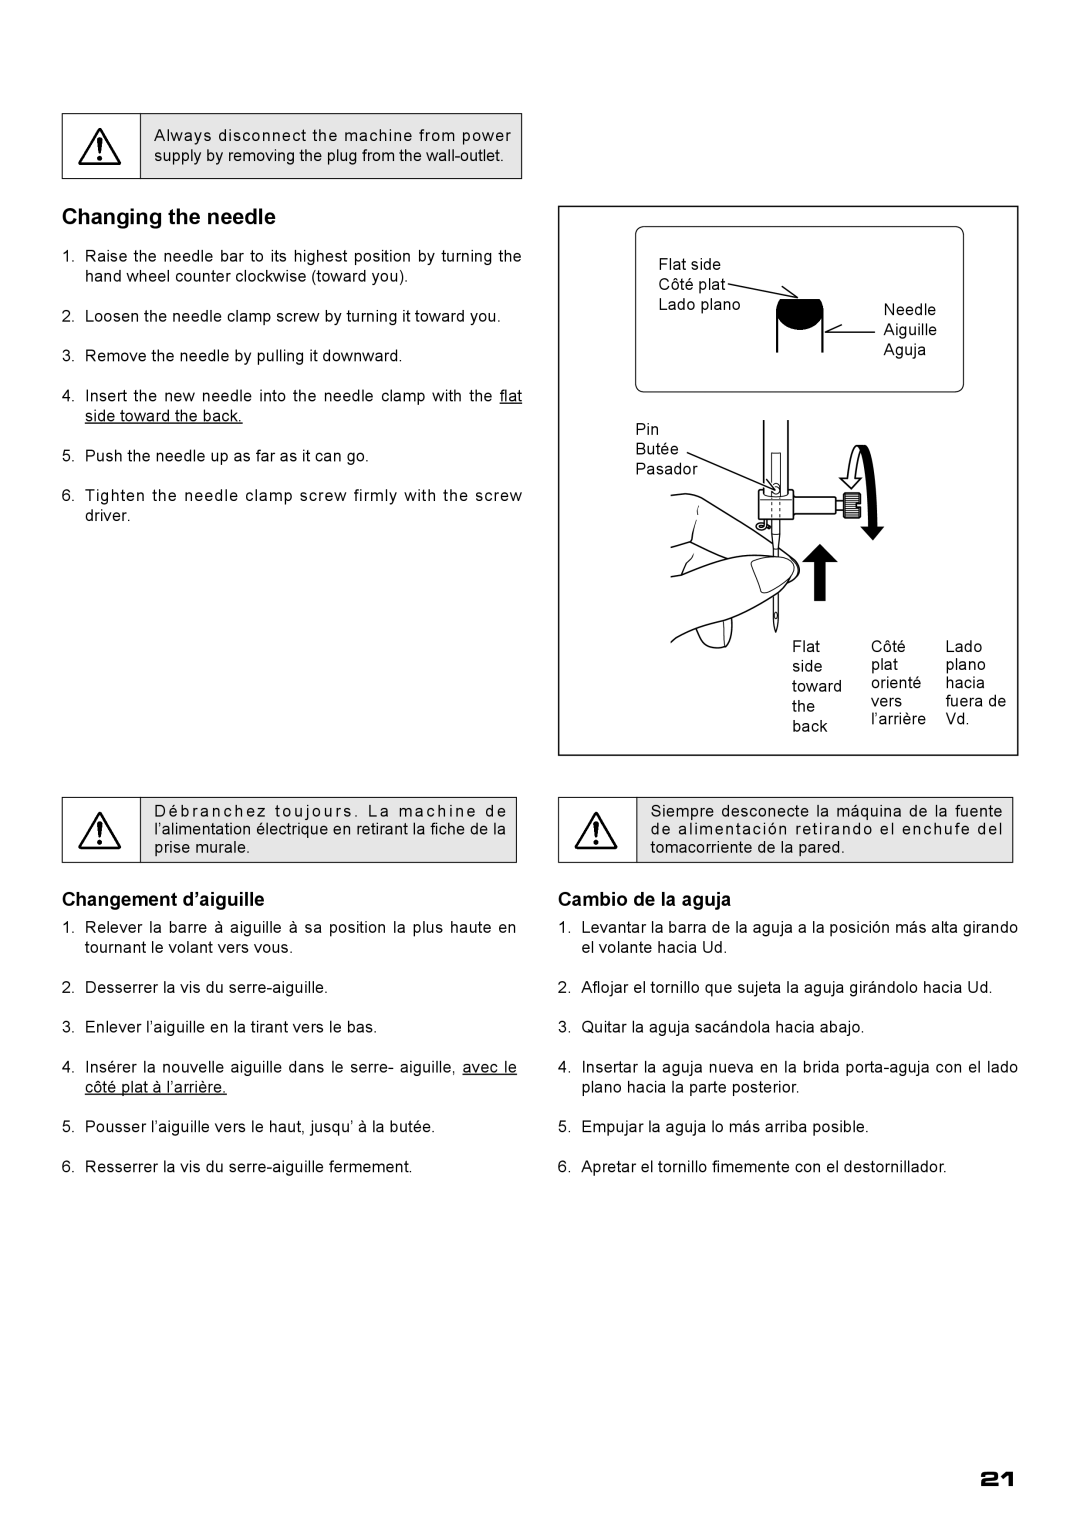 Singer XL-400 instruction manual Changing the needle, Changement d’aiguille, Cambio de la aguja 